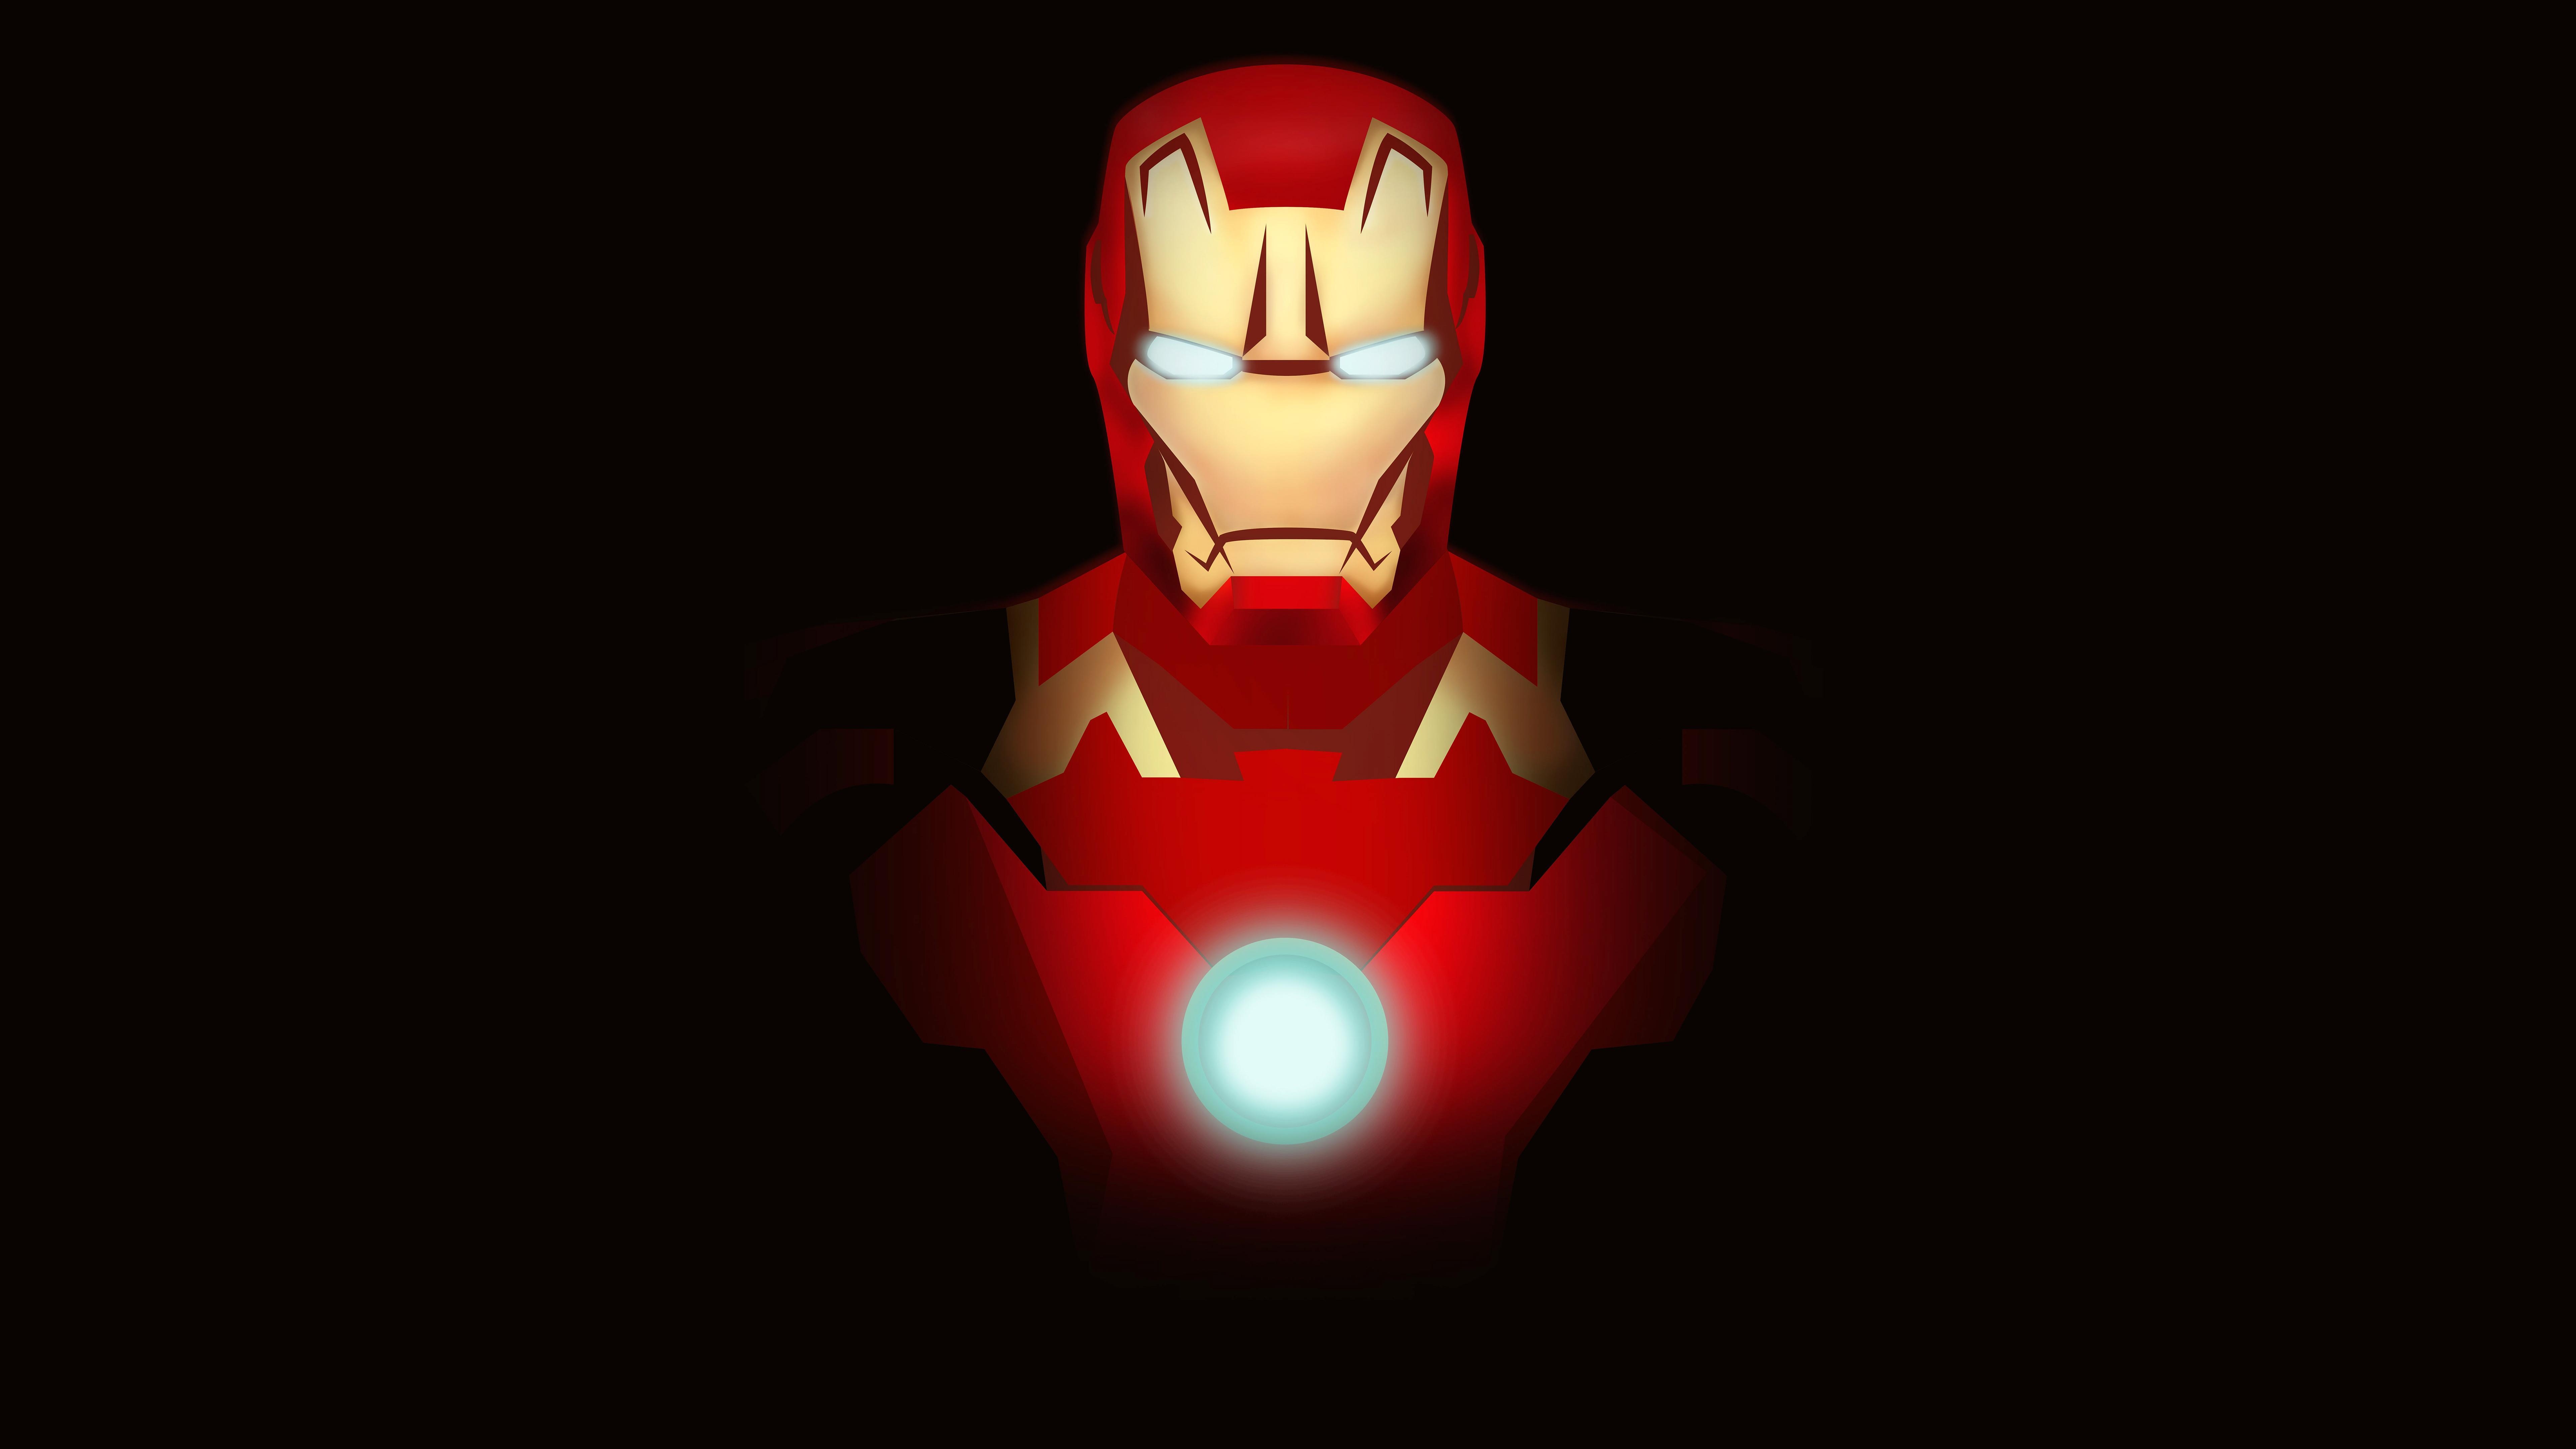 Iron Man Minimal Fan art 4K 8K Wallpaper. HD Wallpaper